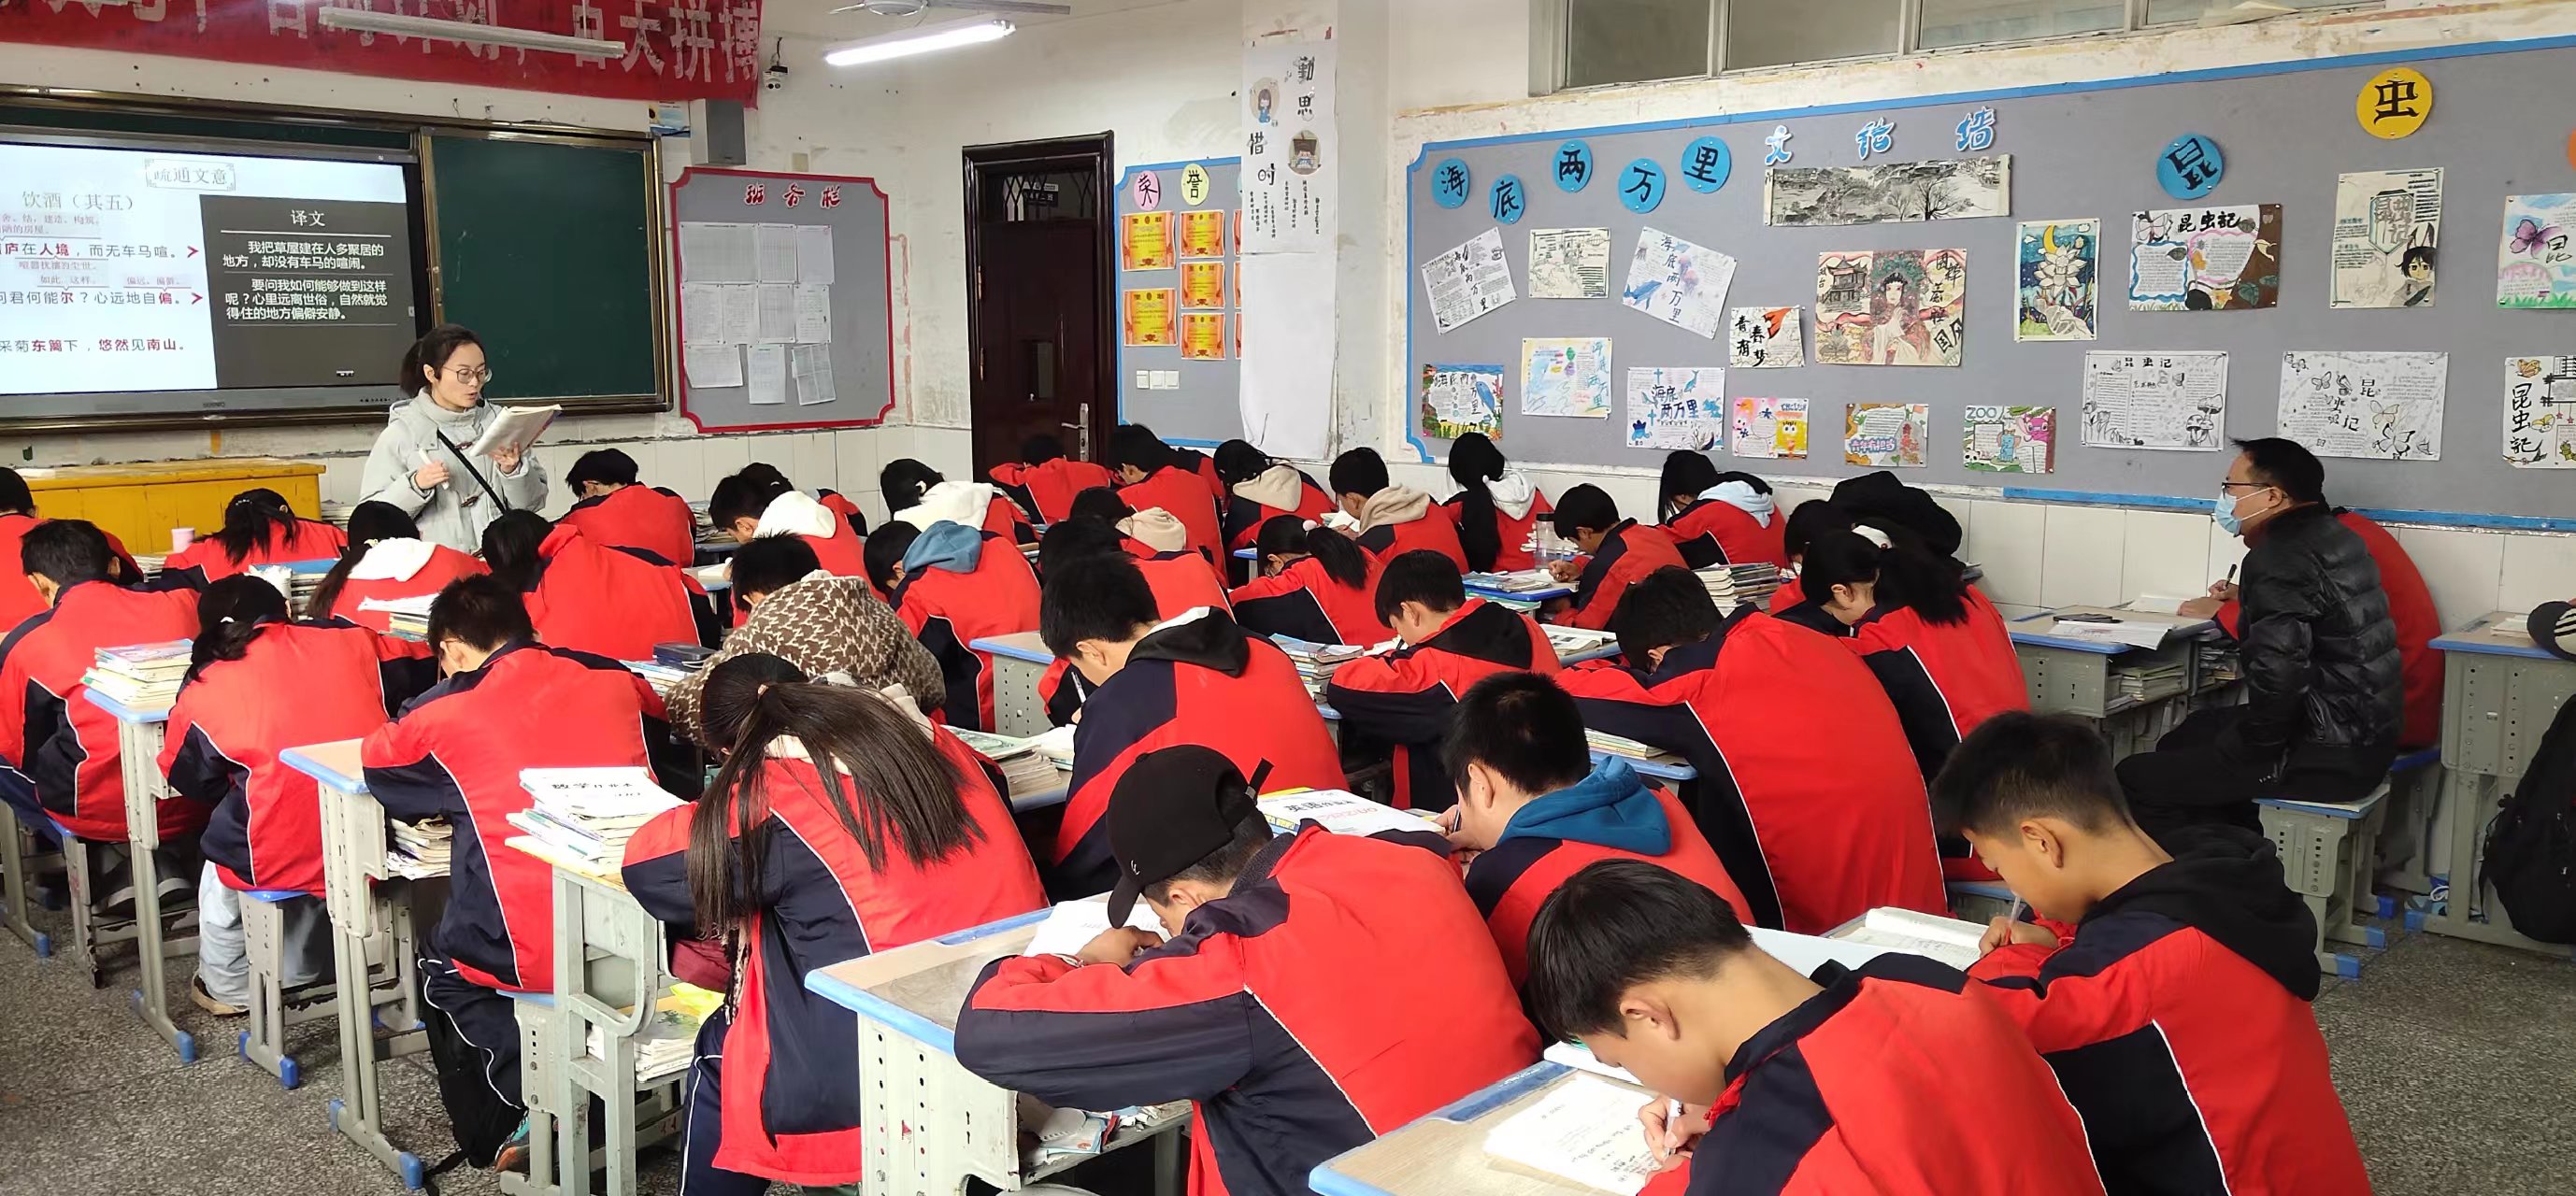 汉阴县教体科技局开展中小学幼儿园教育教学常规督查